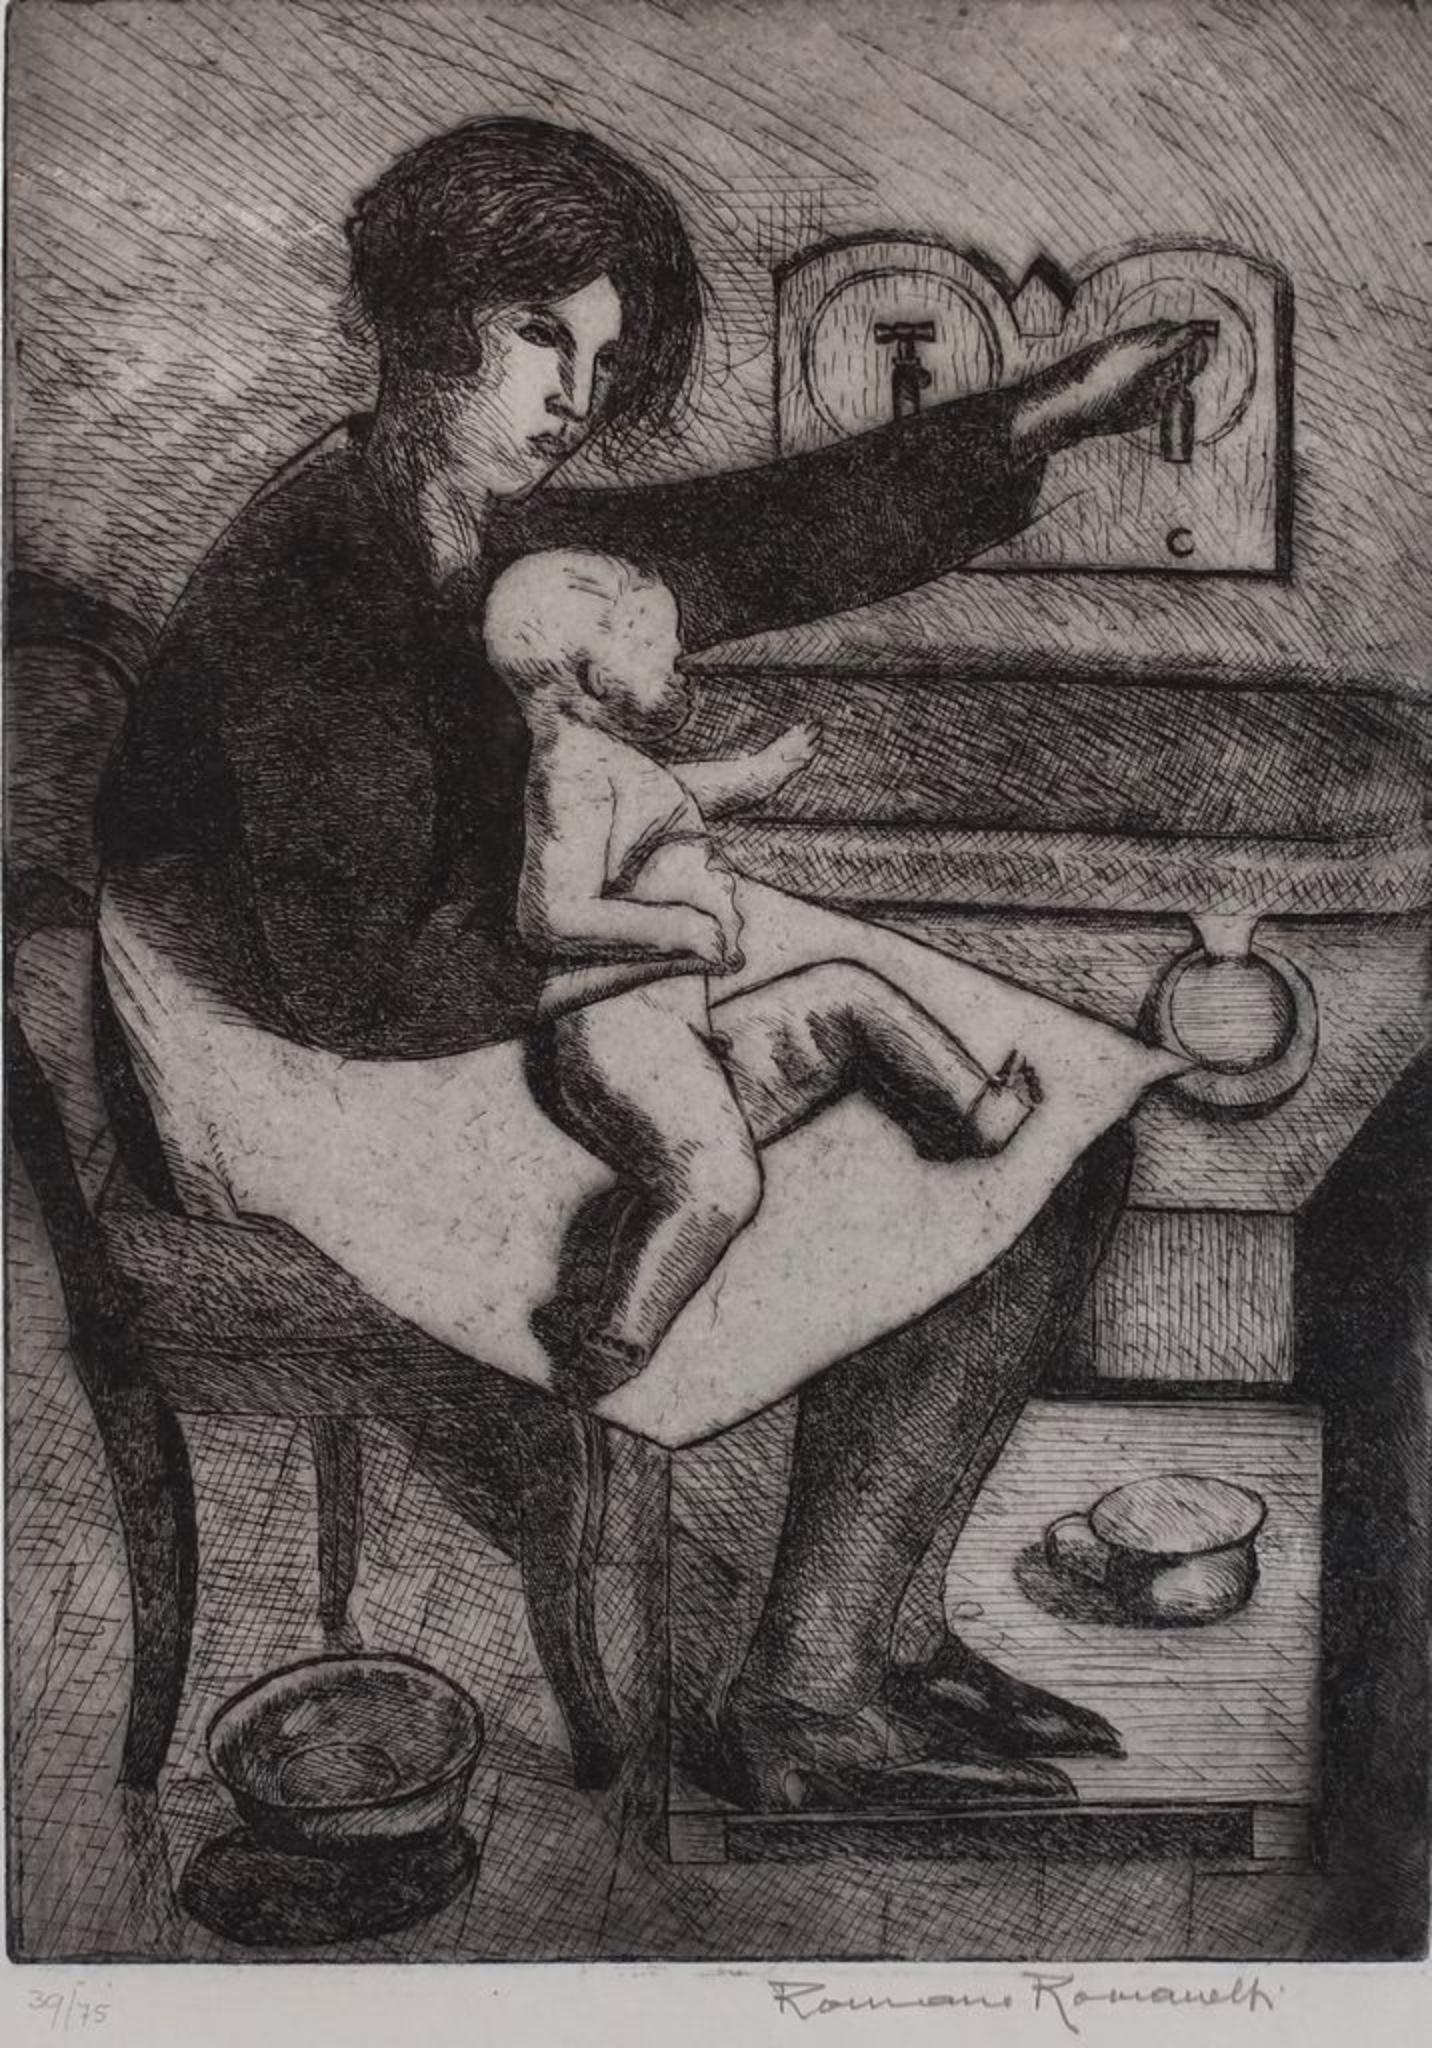 Mère et enfant est une gravure originale sur papier réalisée par Romano Romanelli dans les années 1930.

Dans de bonnes conditions 

Signé à la main en bas à droite.

Édition numérotée, 39/75.

L'œuvre d'art représente une mère avec son enfant.